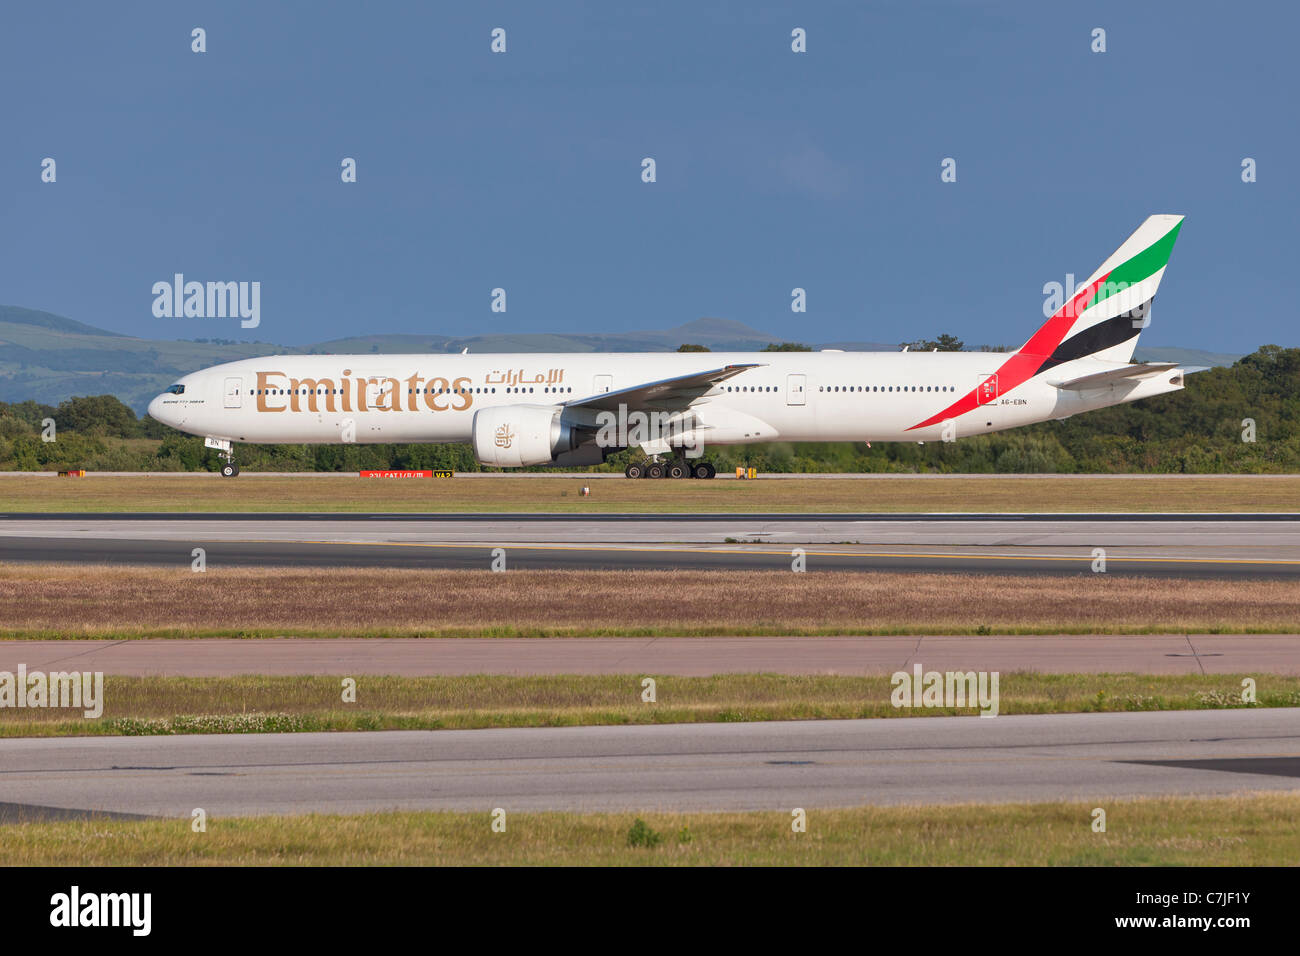 Emirates Airlines aeromobili, Inghilterra Foto Stock